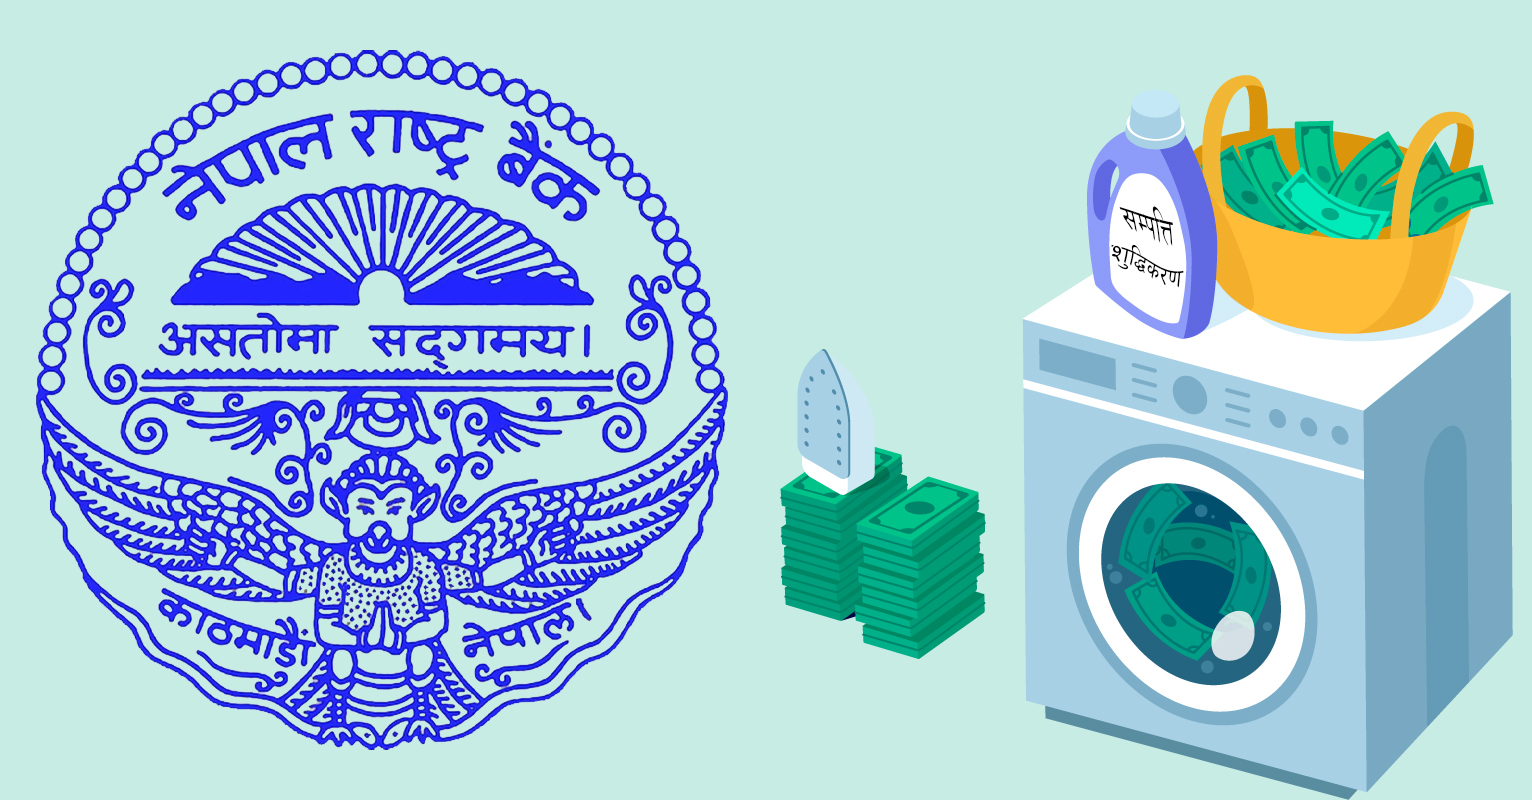 नेपाल राष्ट्र बैंकमा सम्पति शुद्धीकरण हेर्ने छुट्टै महाशाखा,  कालोधन खोज्न बिशेष भूमिका खेल्ने